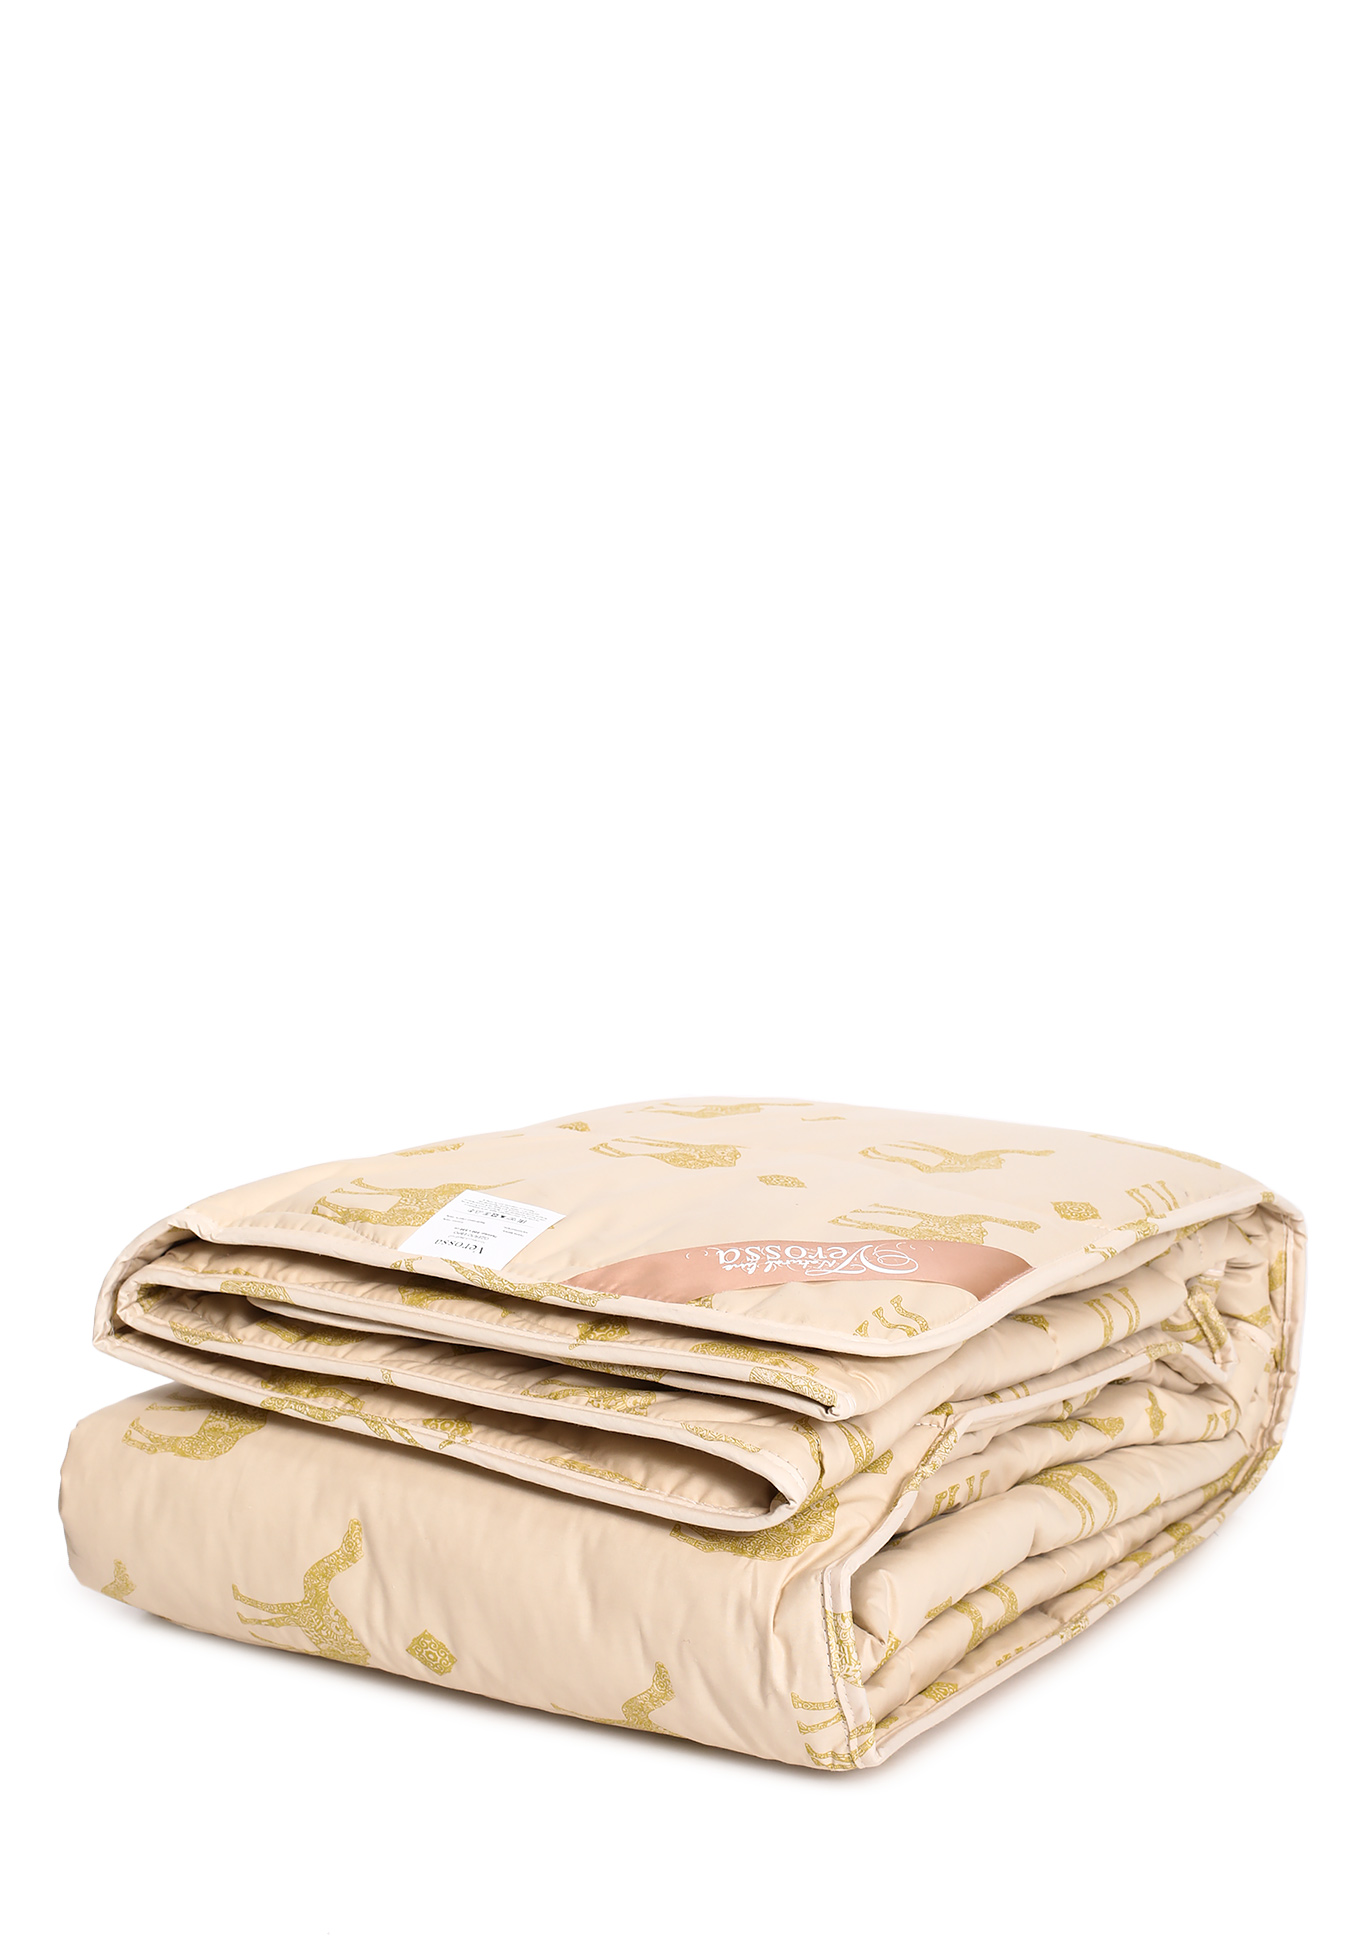 Одеяло из верблюжьей  шерсти, размер 1,5 сп - фото 2